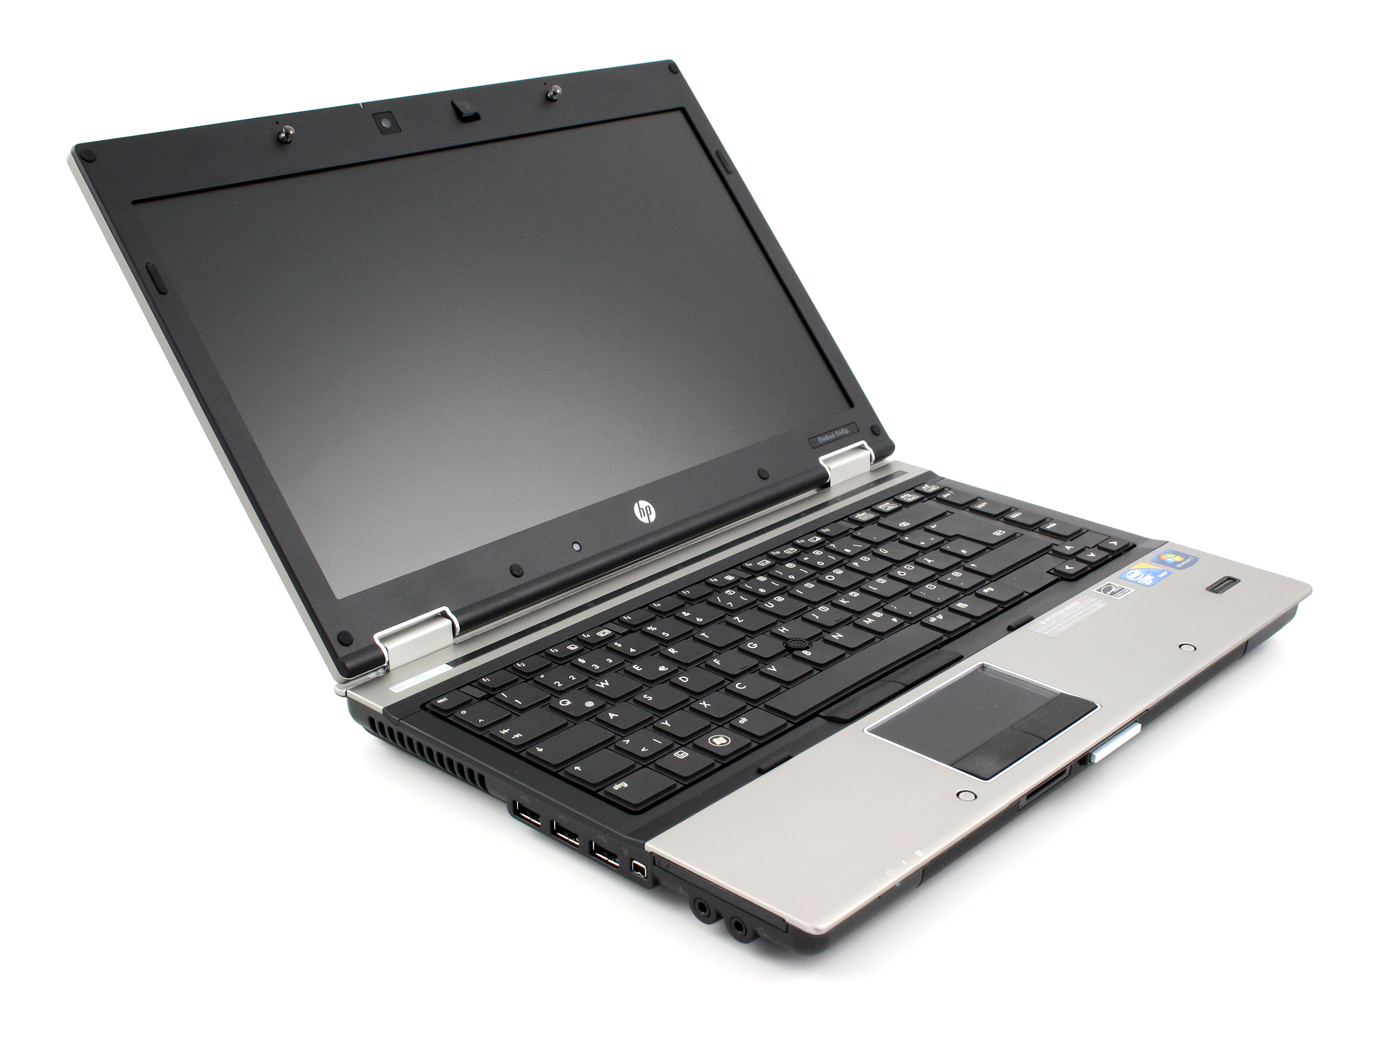 Laptop Hp Elitebook 8440p Dell E6410 I5 Tiêu Chuần Quân đội Mỹ 5giay